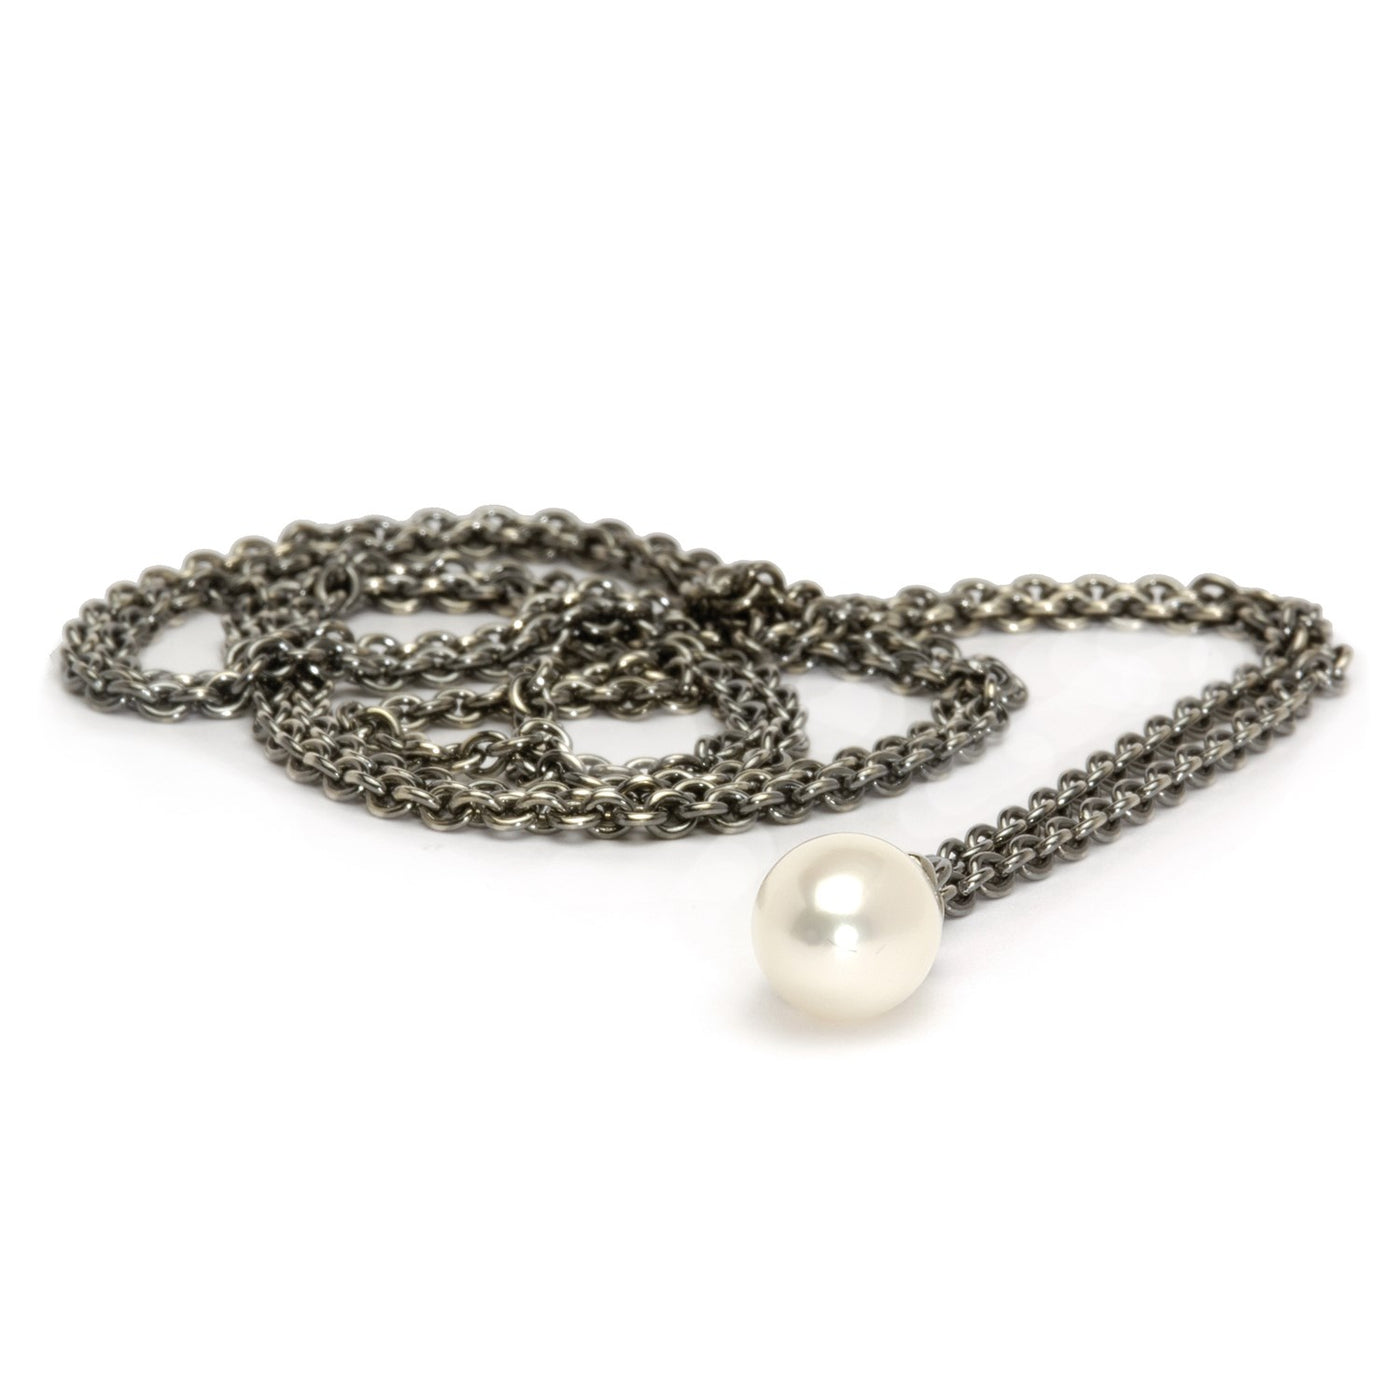 Fantasihalskæde med hvid perle vedhæng på en sølvkæde, der er velegnet til at tilføje kugler eller vedhæng for personliggørelse.